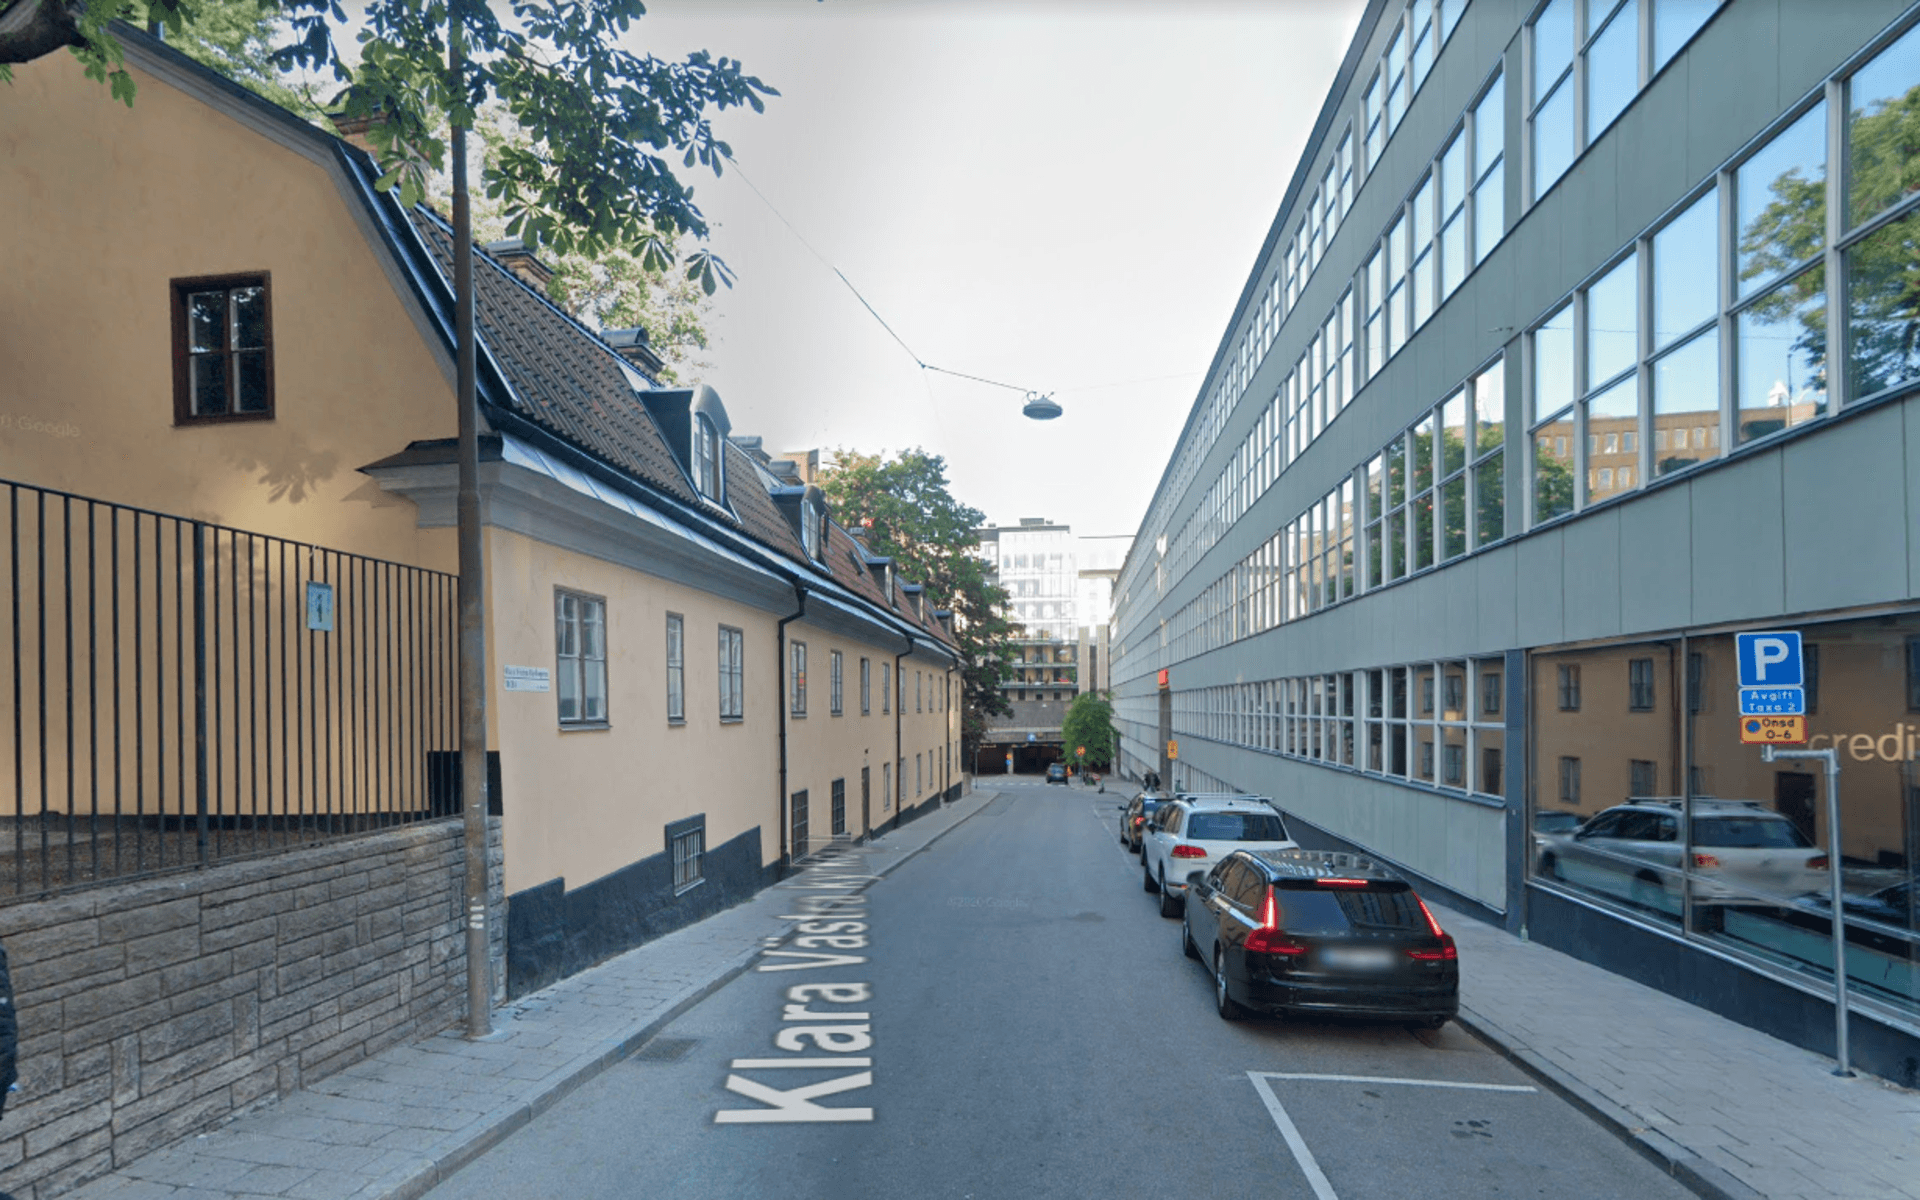 Sveriges dyraste kvadratmeterpris, 134 792 kronor per kvm, finns på Klara västra kyrkogata i Stockholm.